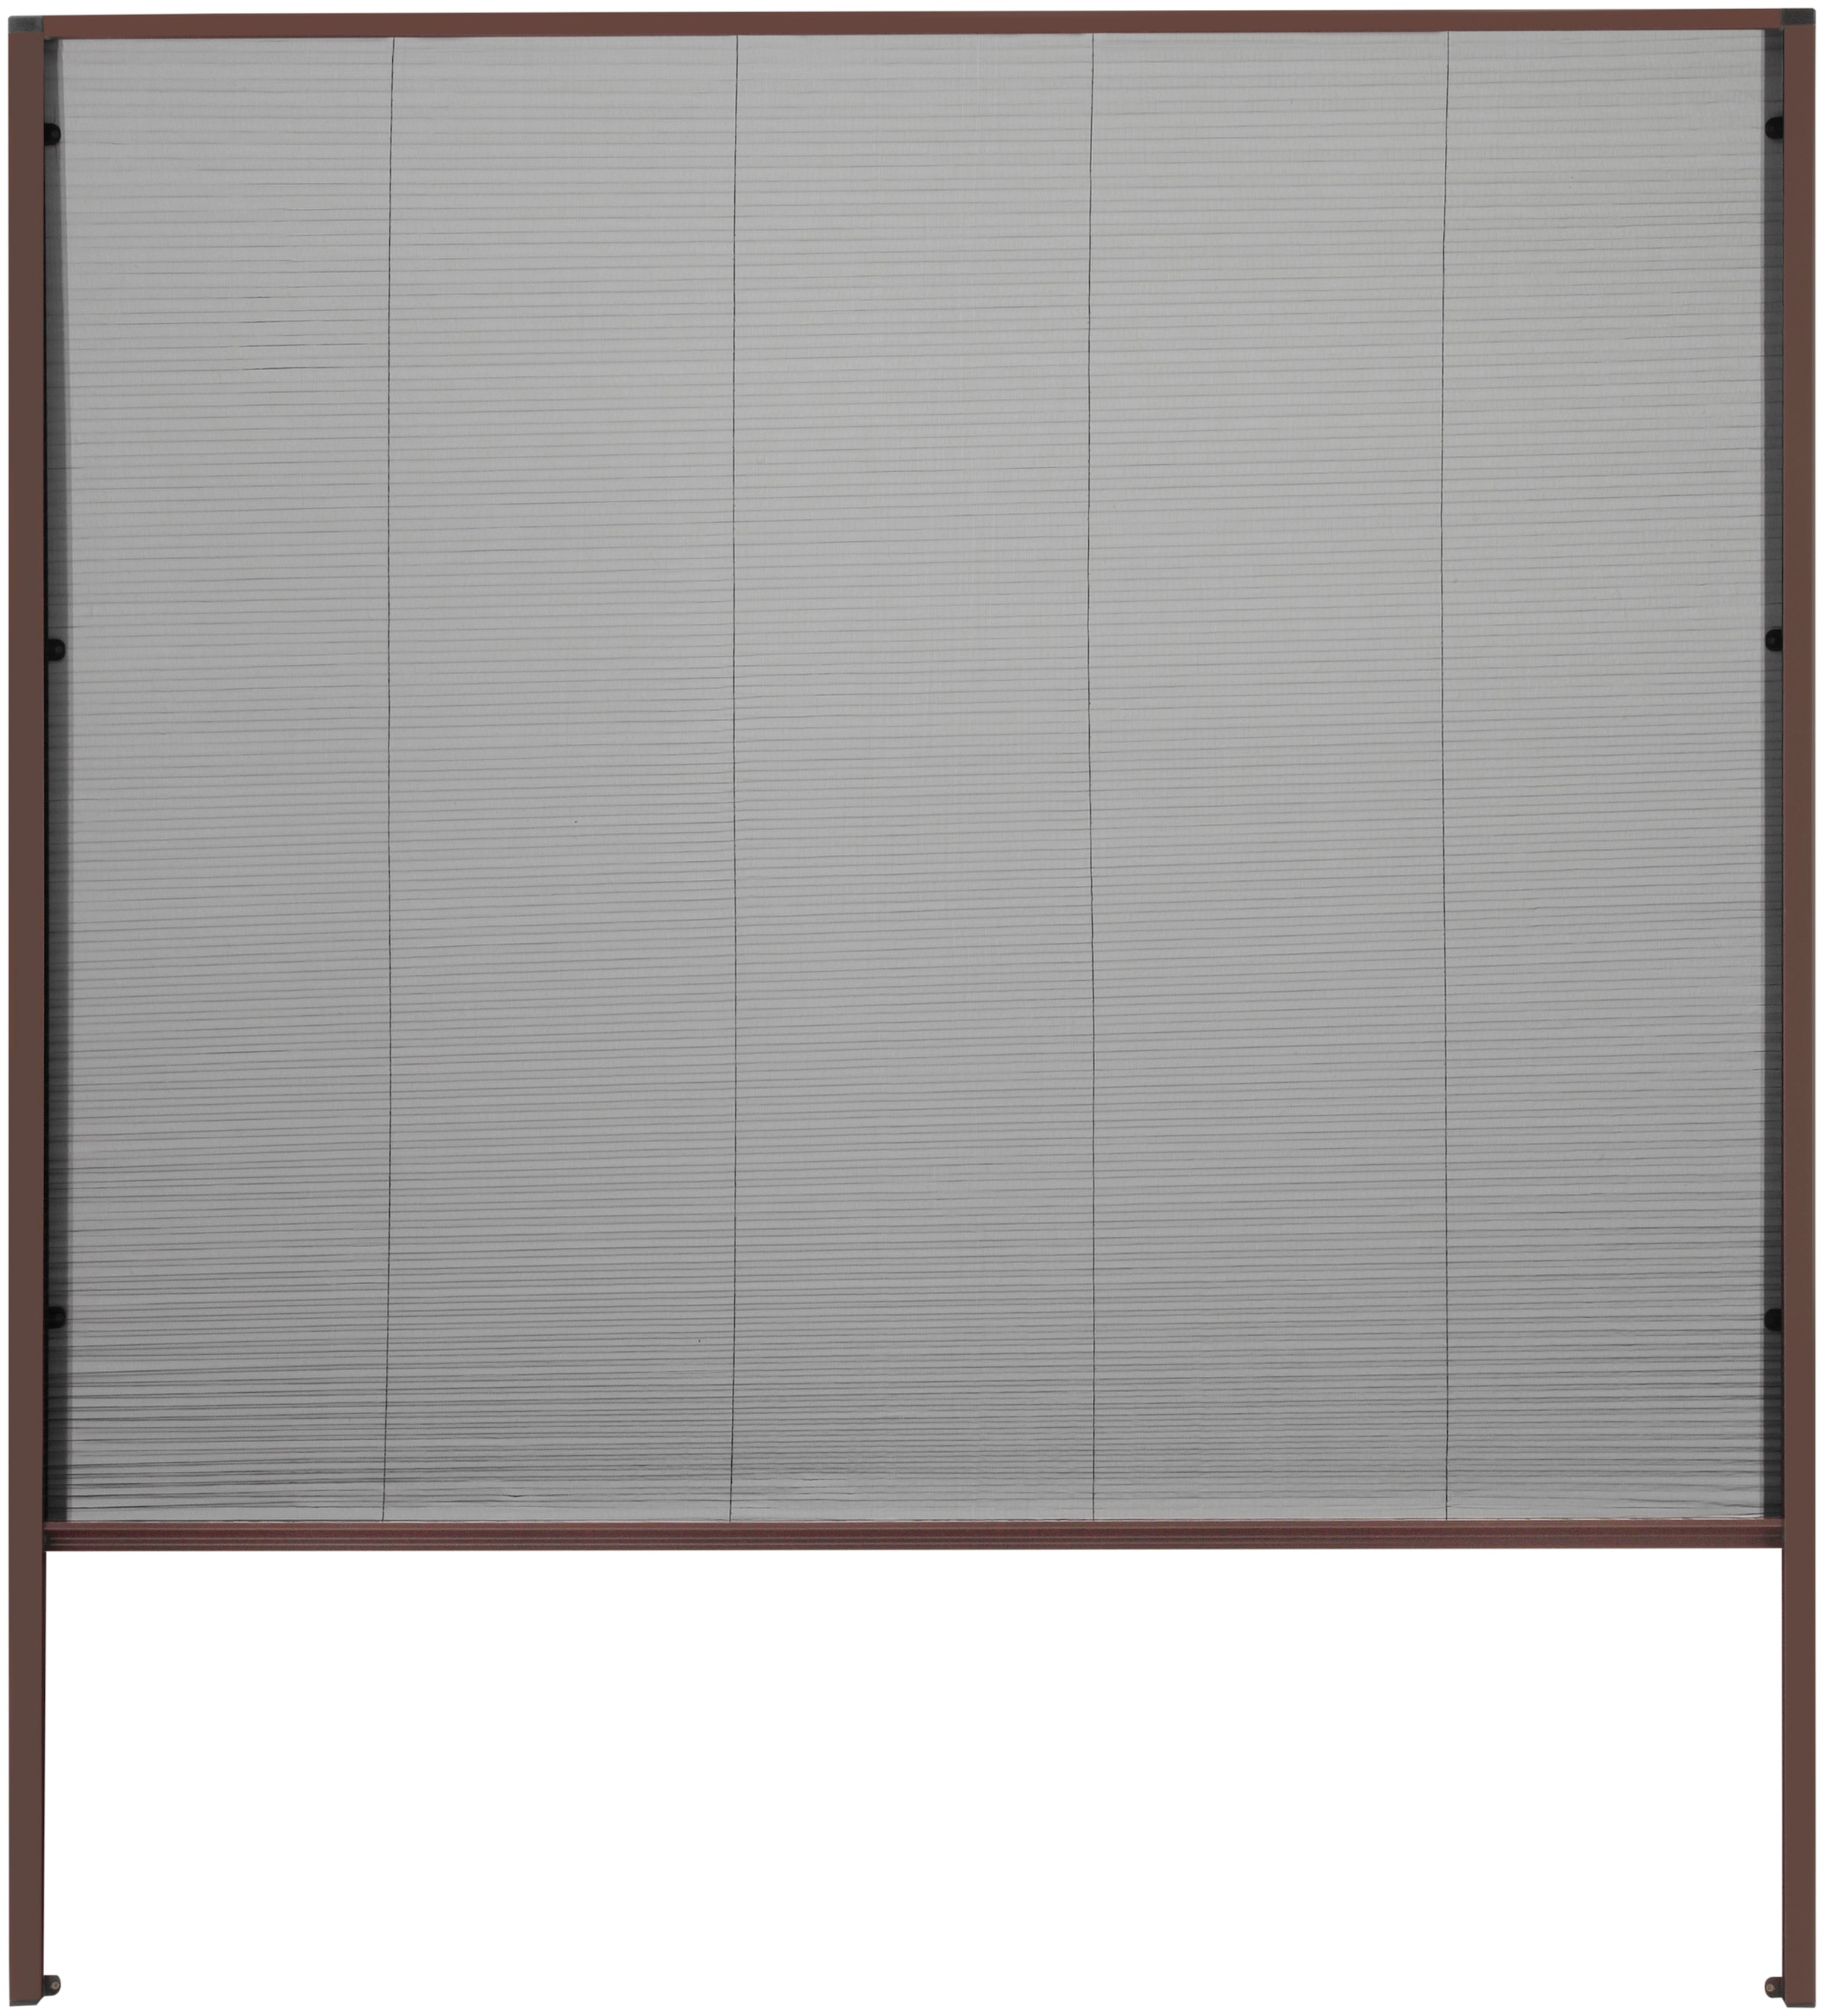 hecht international Insektenschutzrollo "für Dachfenster", transparent, braun/schwarz, BxH: 160x180 cm